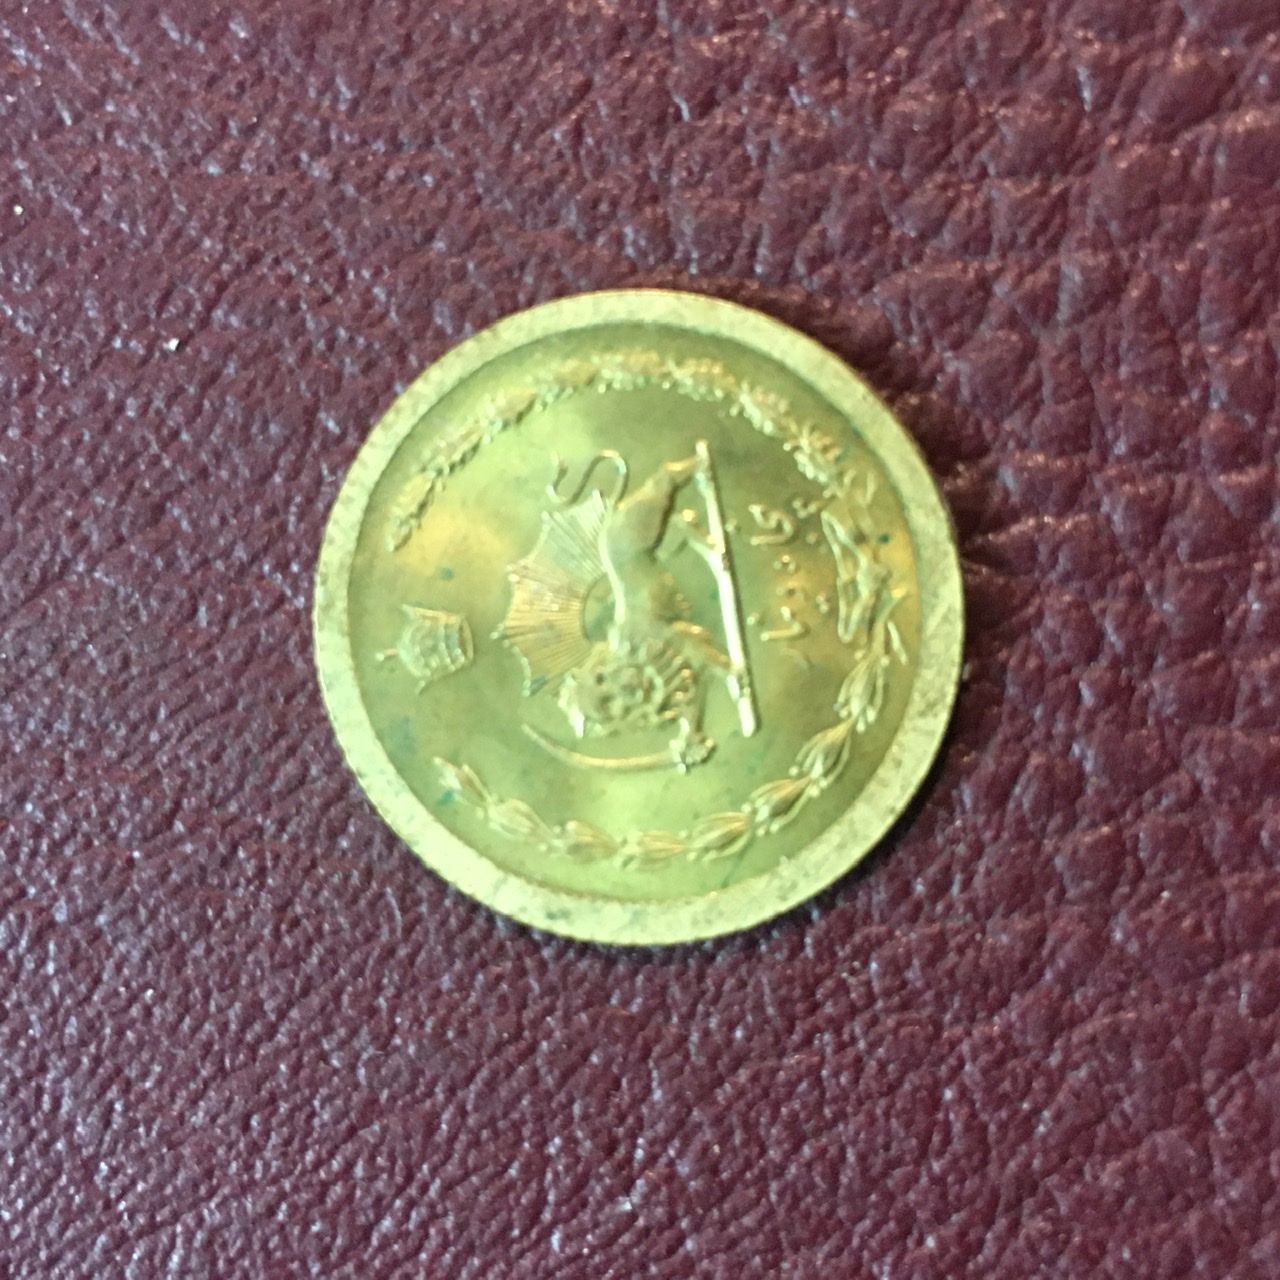 سکه ۵٠ دینار برنزی ١٣۵٣ نسبتا کمیاب با کیفیت بانکی لعابدار